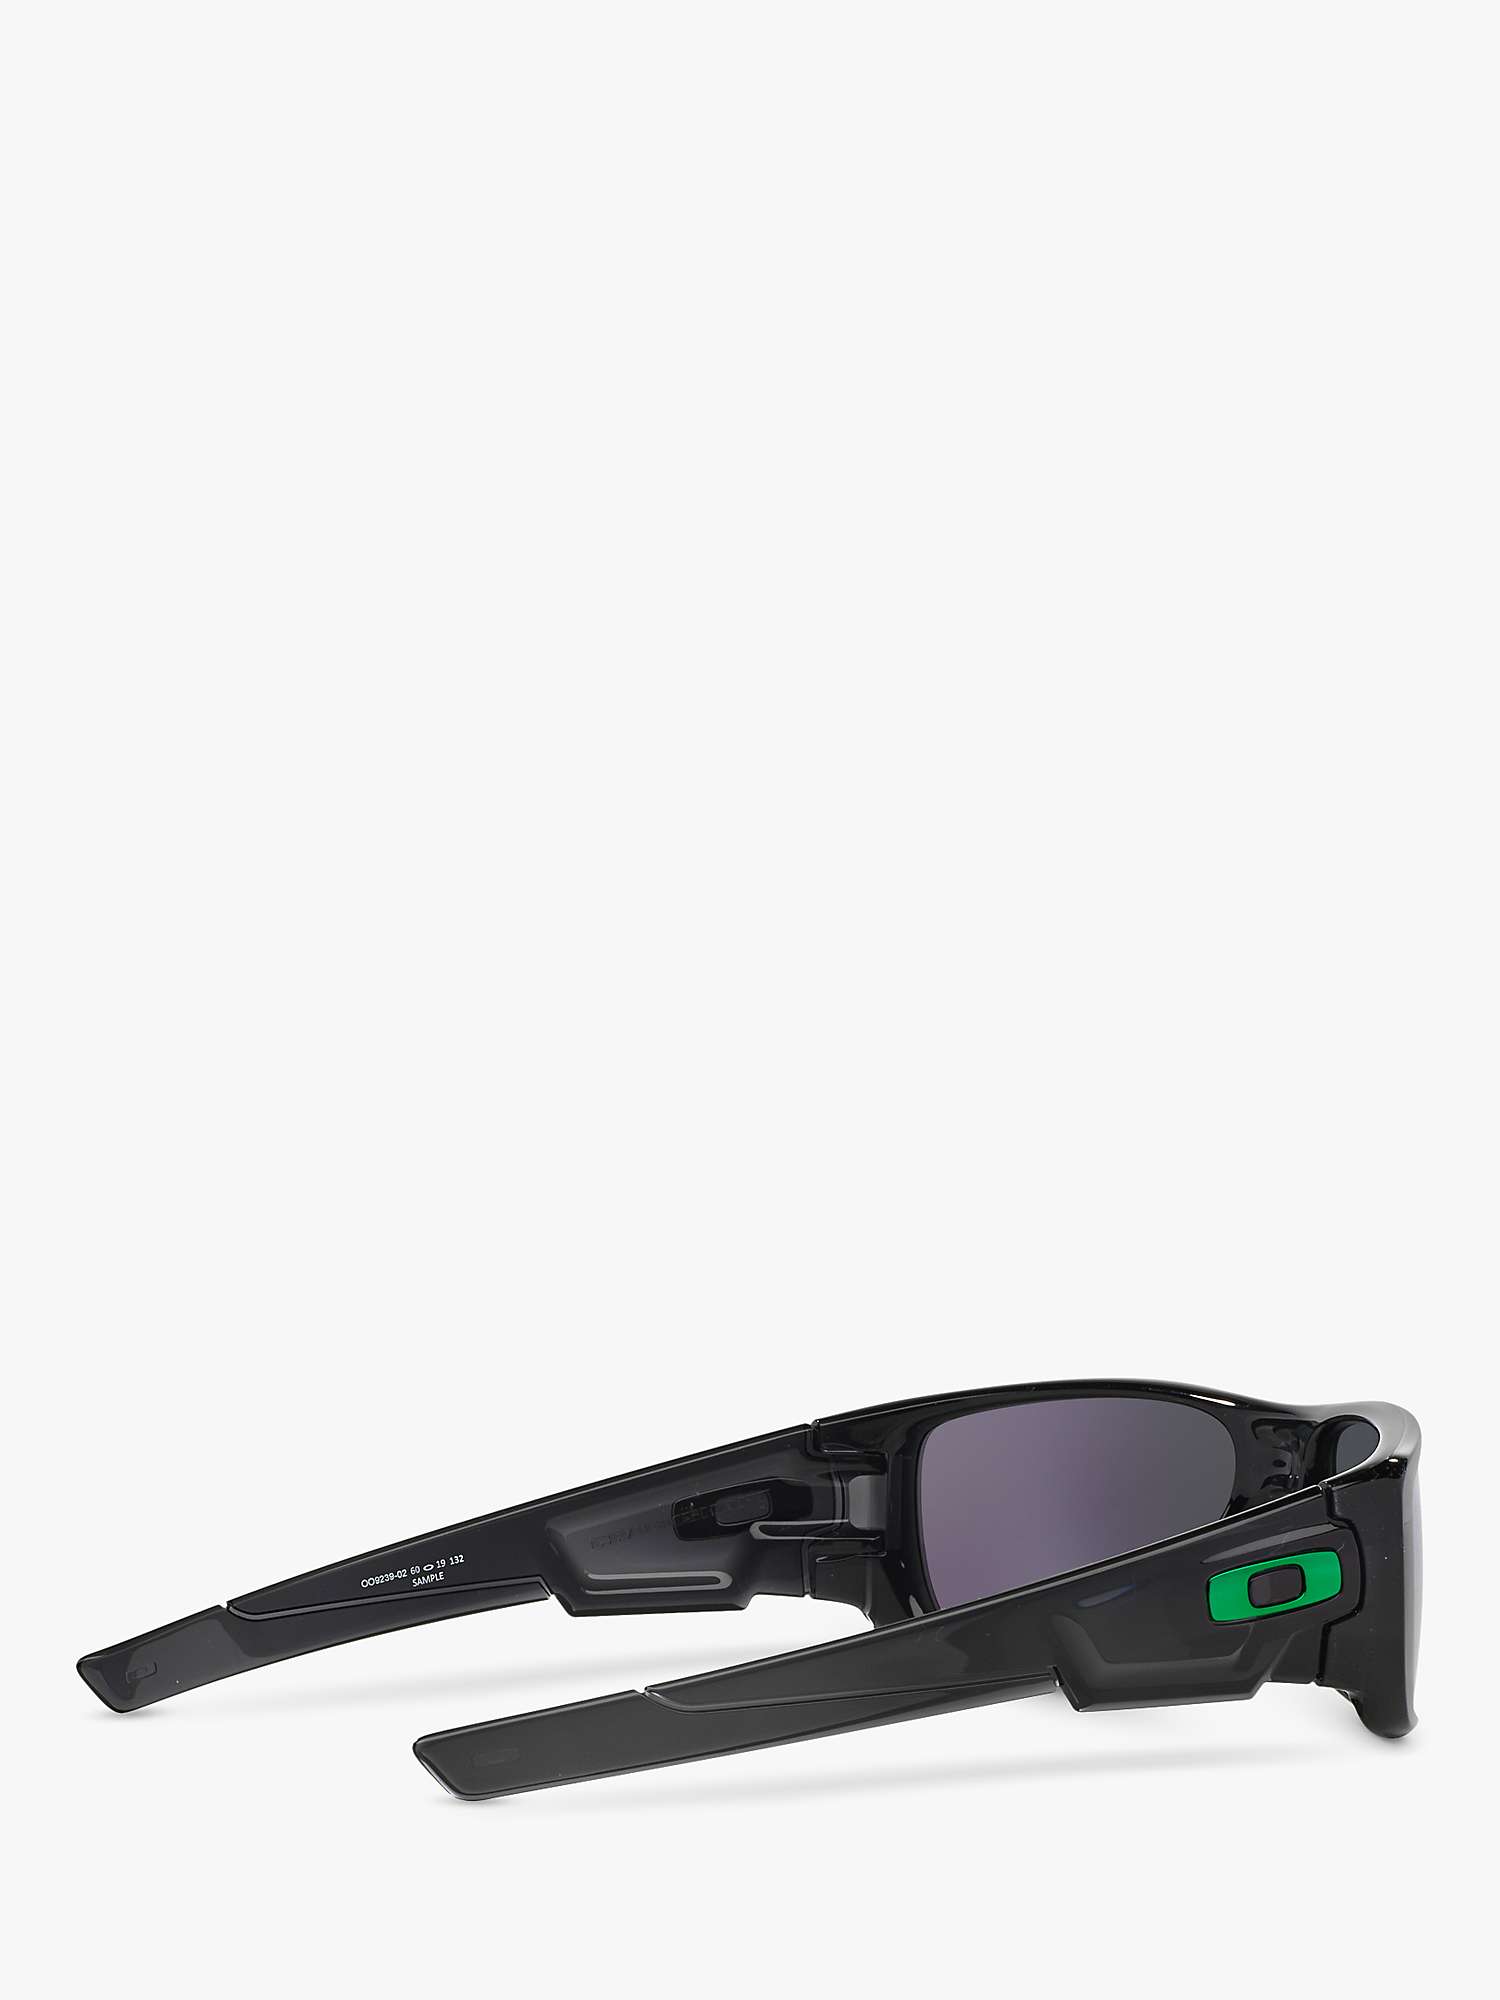 Buy Oakley OO9239 Men's Crankshaft Rectangular Sunglasses, Black Ink/Mirror Green Online at johnlewis.com